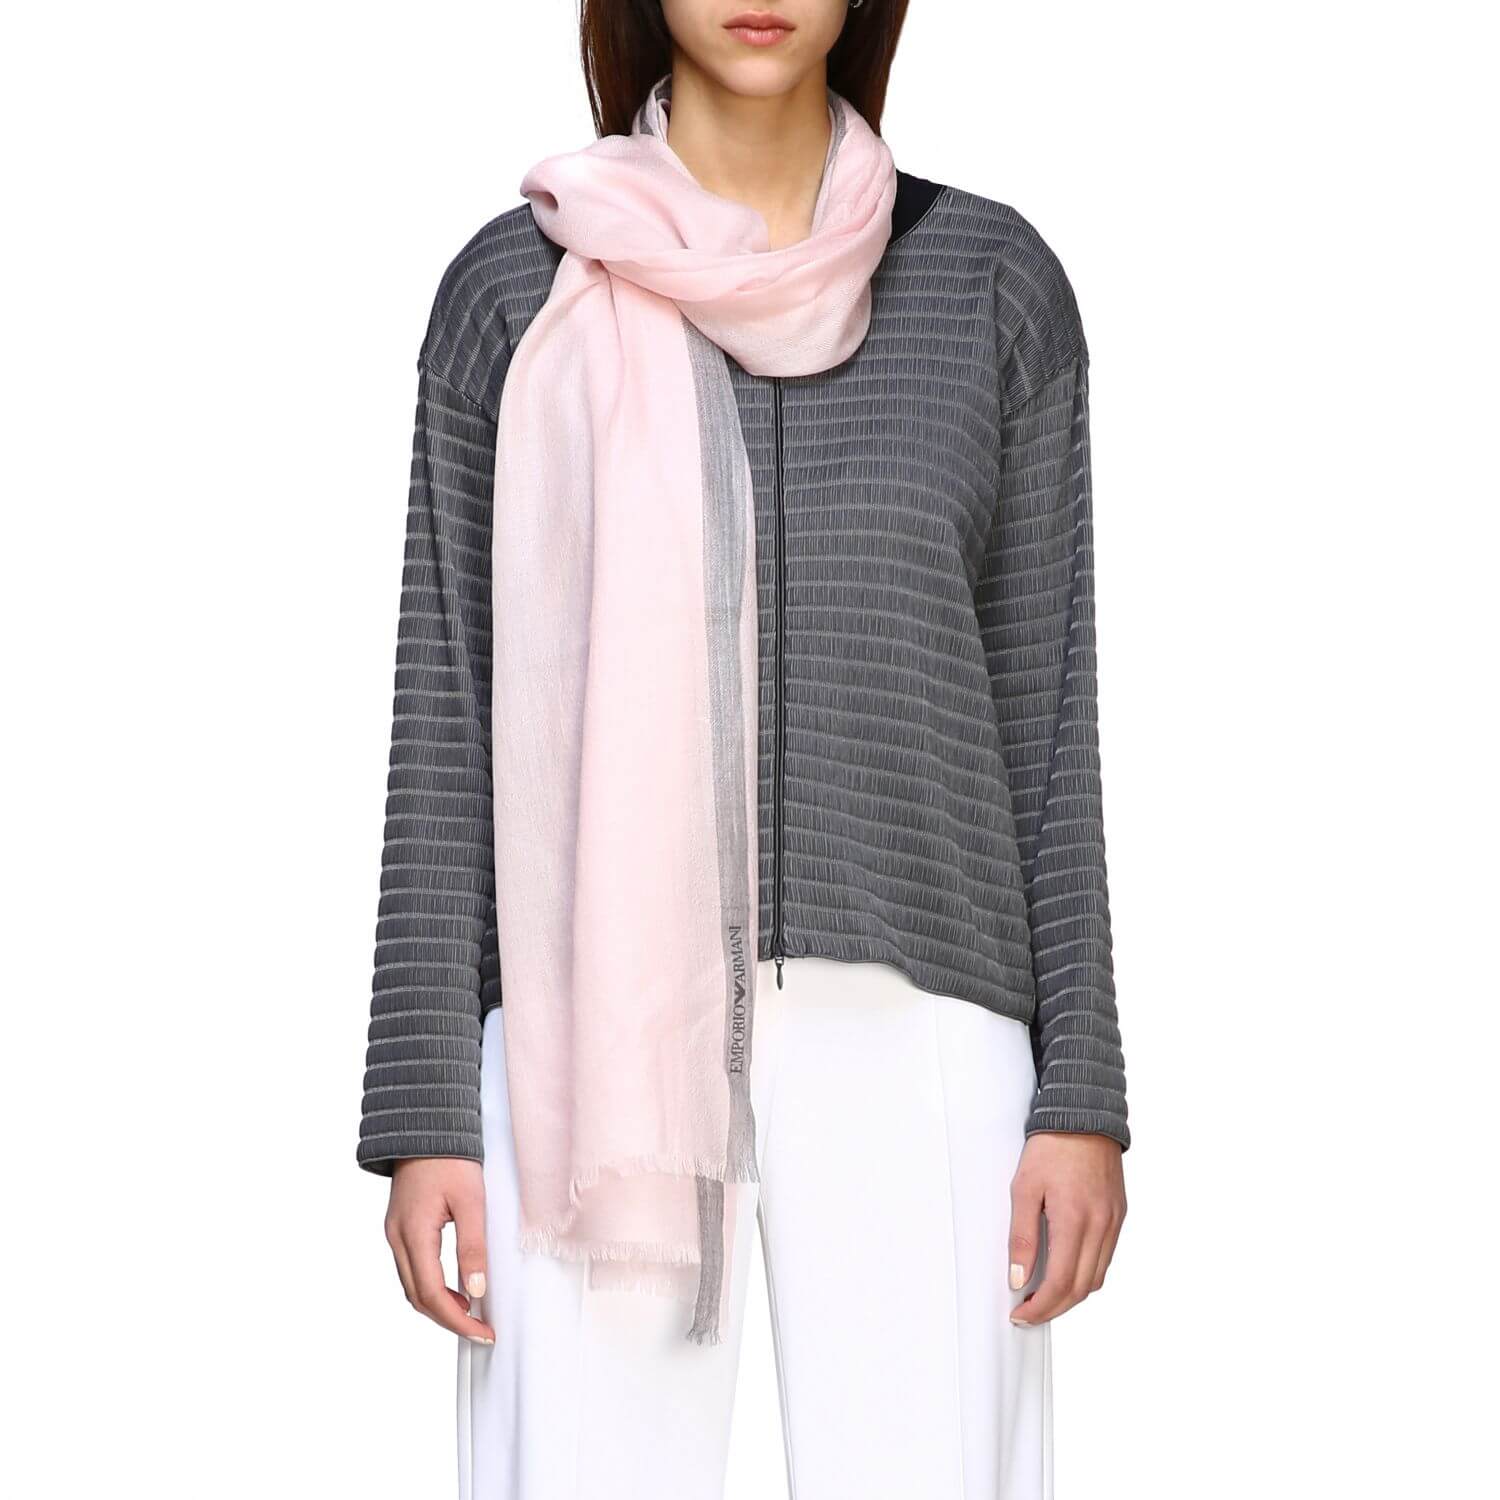 Кашемировый шарф Armani 70х200 см, цвет Розовый, фото 1